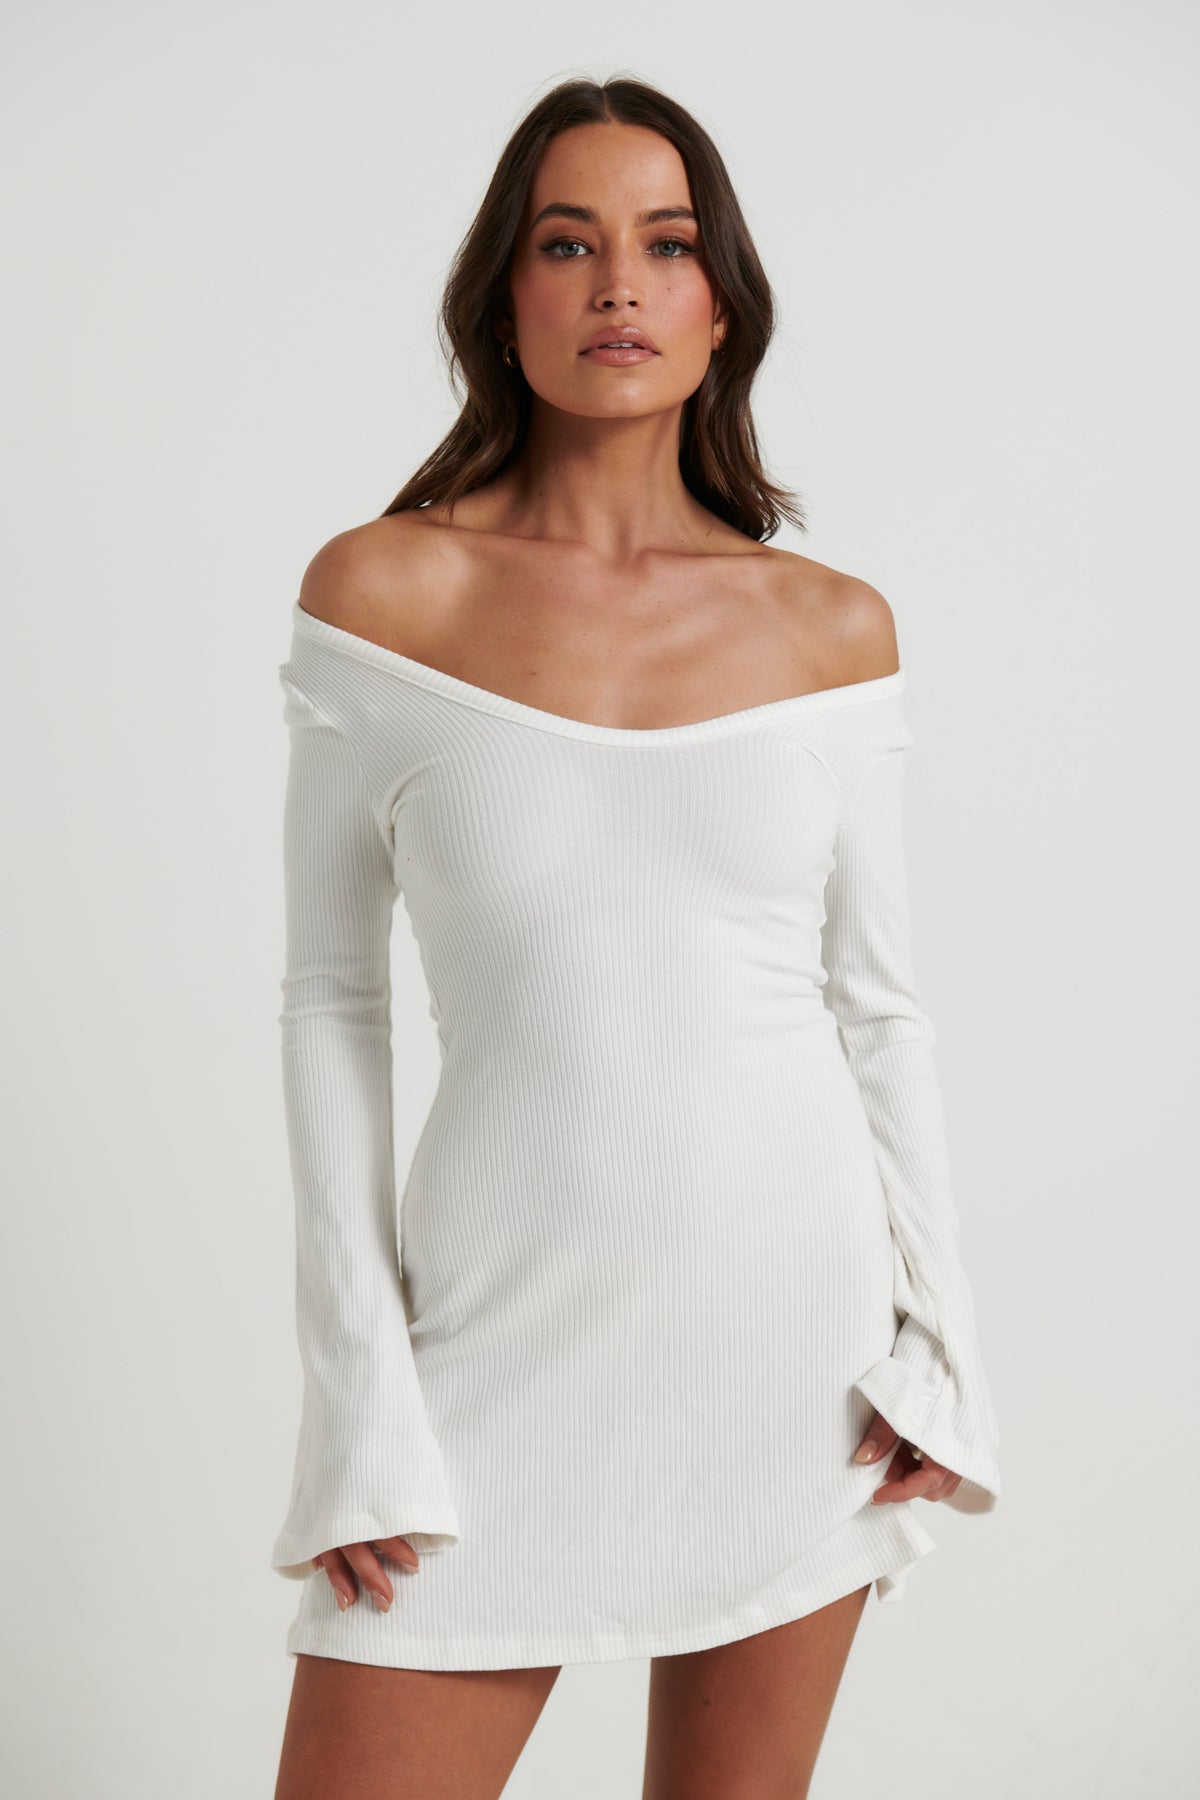 Alilah Mini Dress White